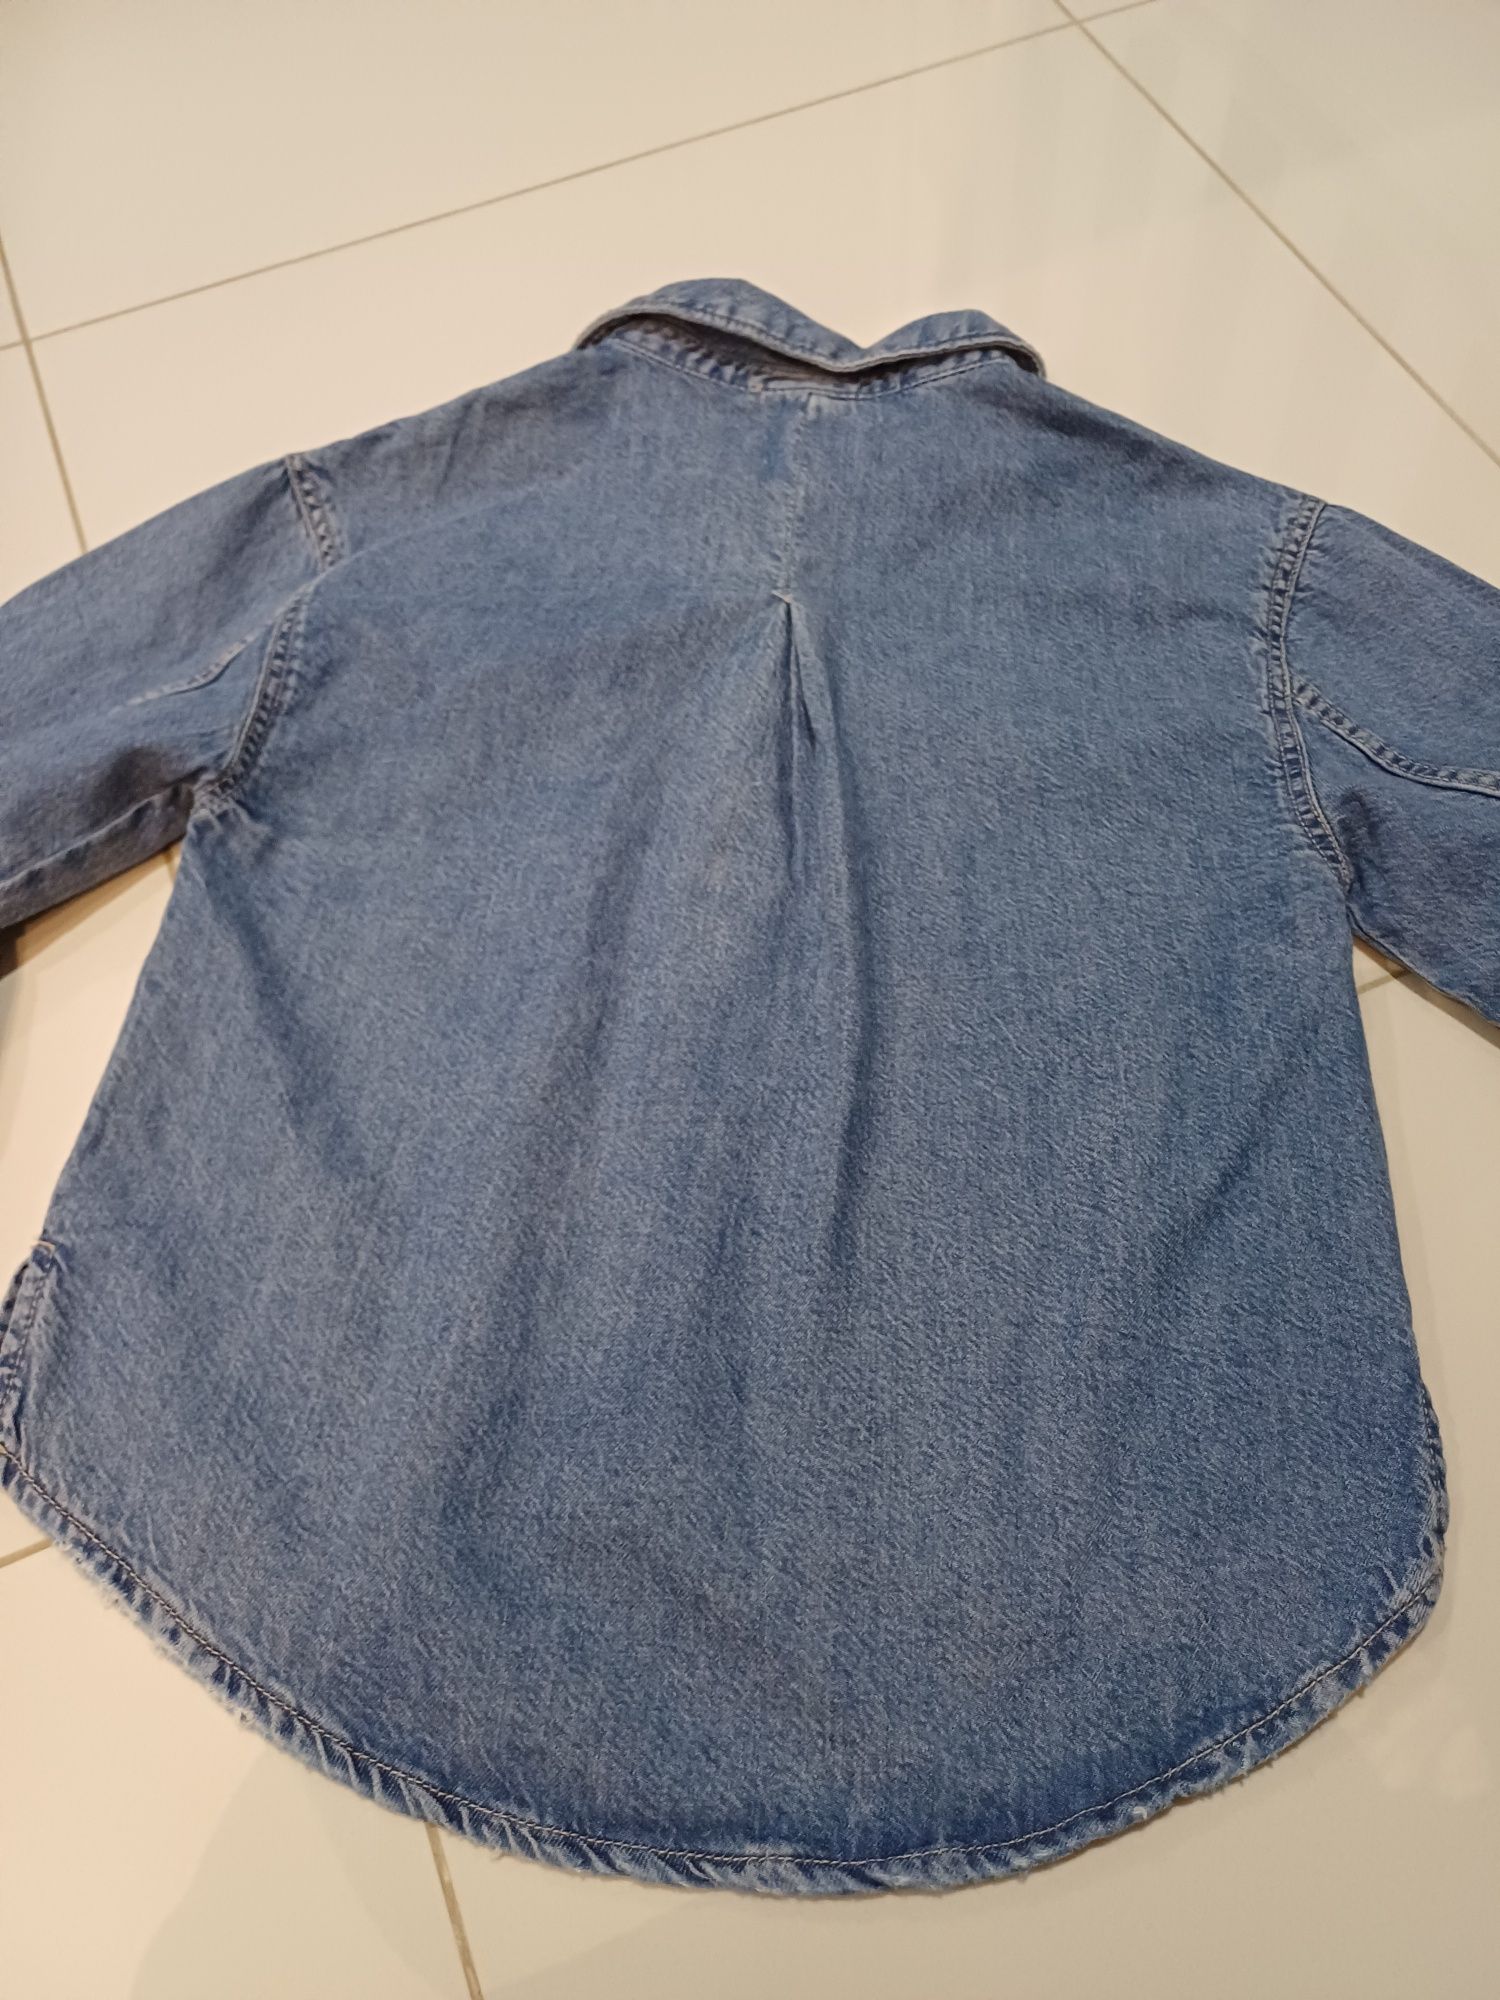 Katana jeansowa dżinsowa zara 152 koszula kurtka